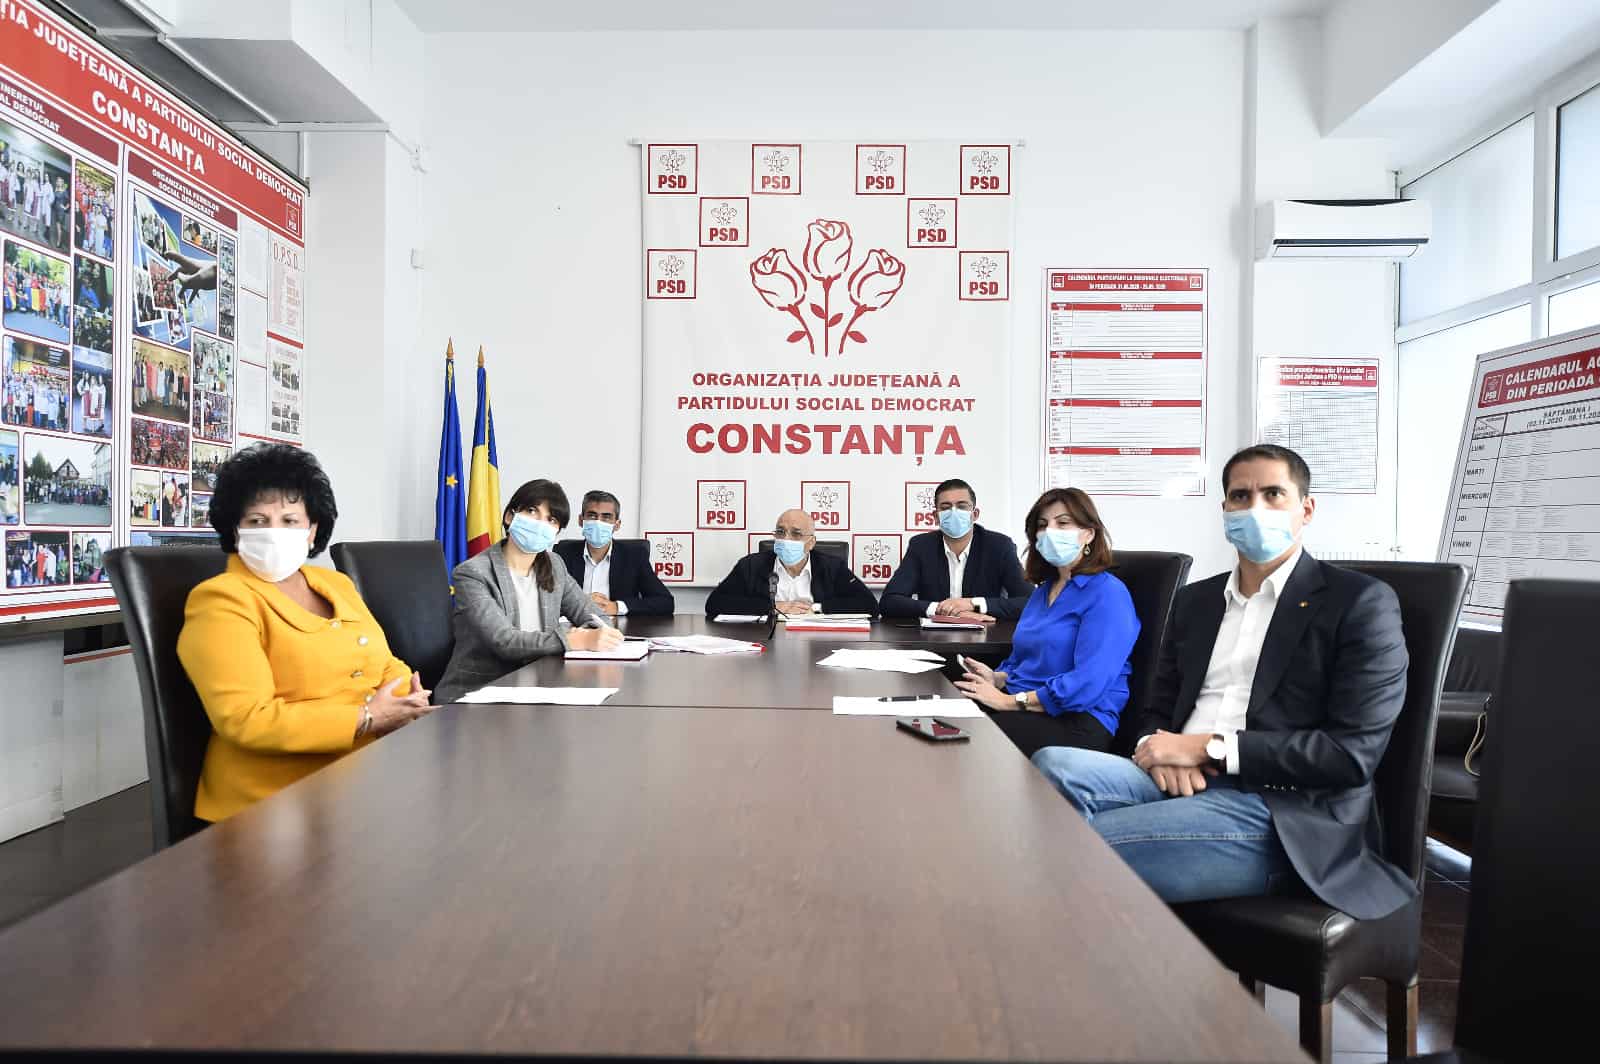 Câte mandate de parlamentar vrea să obțină PSD Constanța